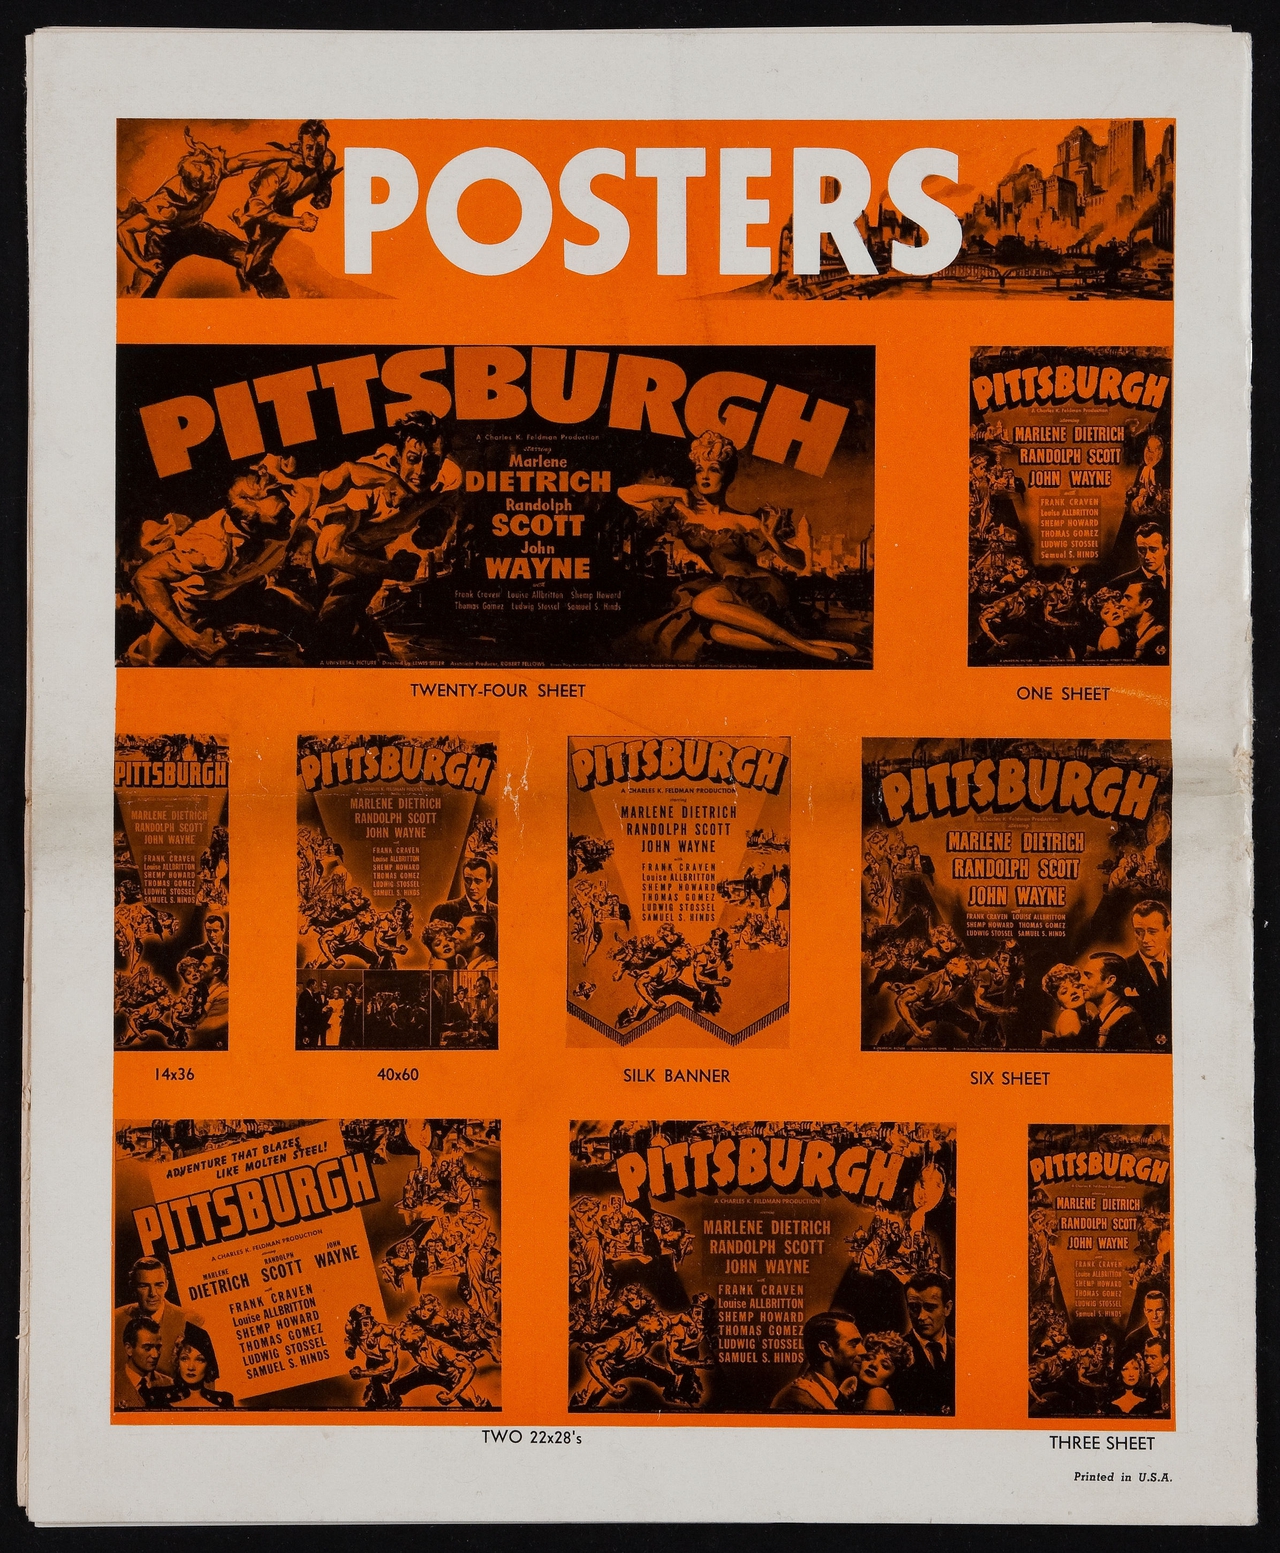  فیلم سینمایی Pittsburgh با حضور John Wayne، Randolph Scott و مارلنه دیتریش